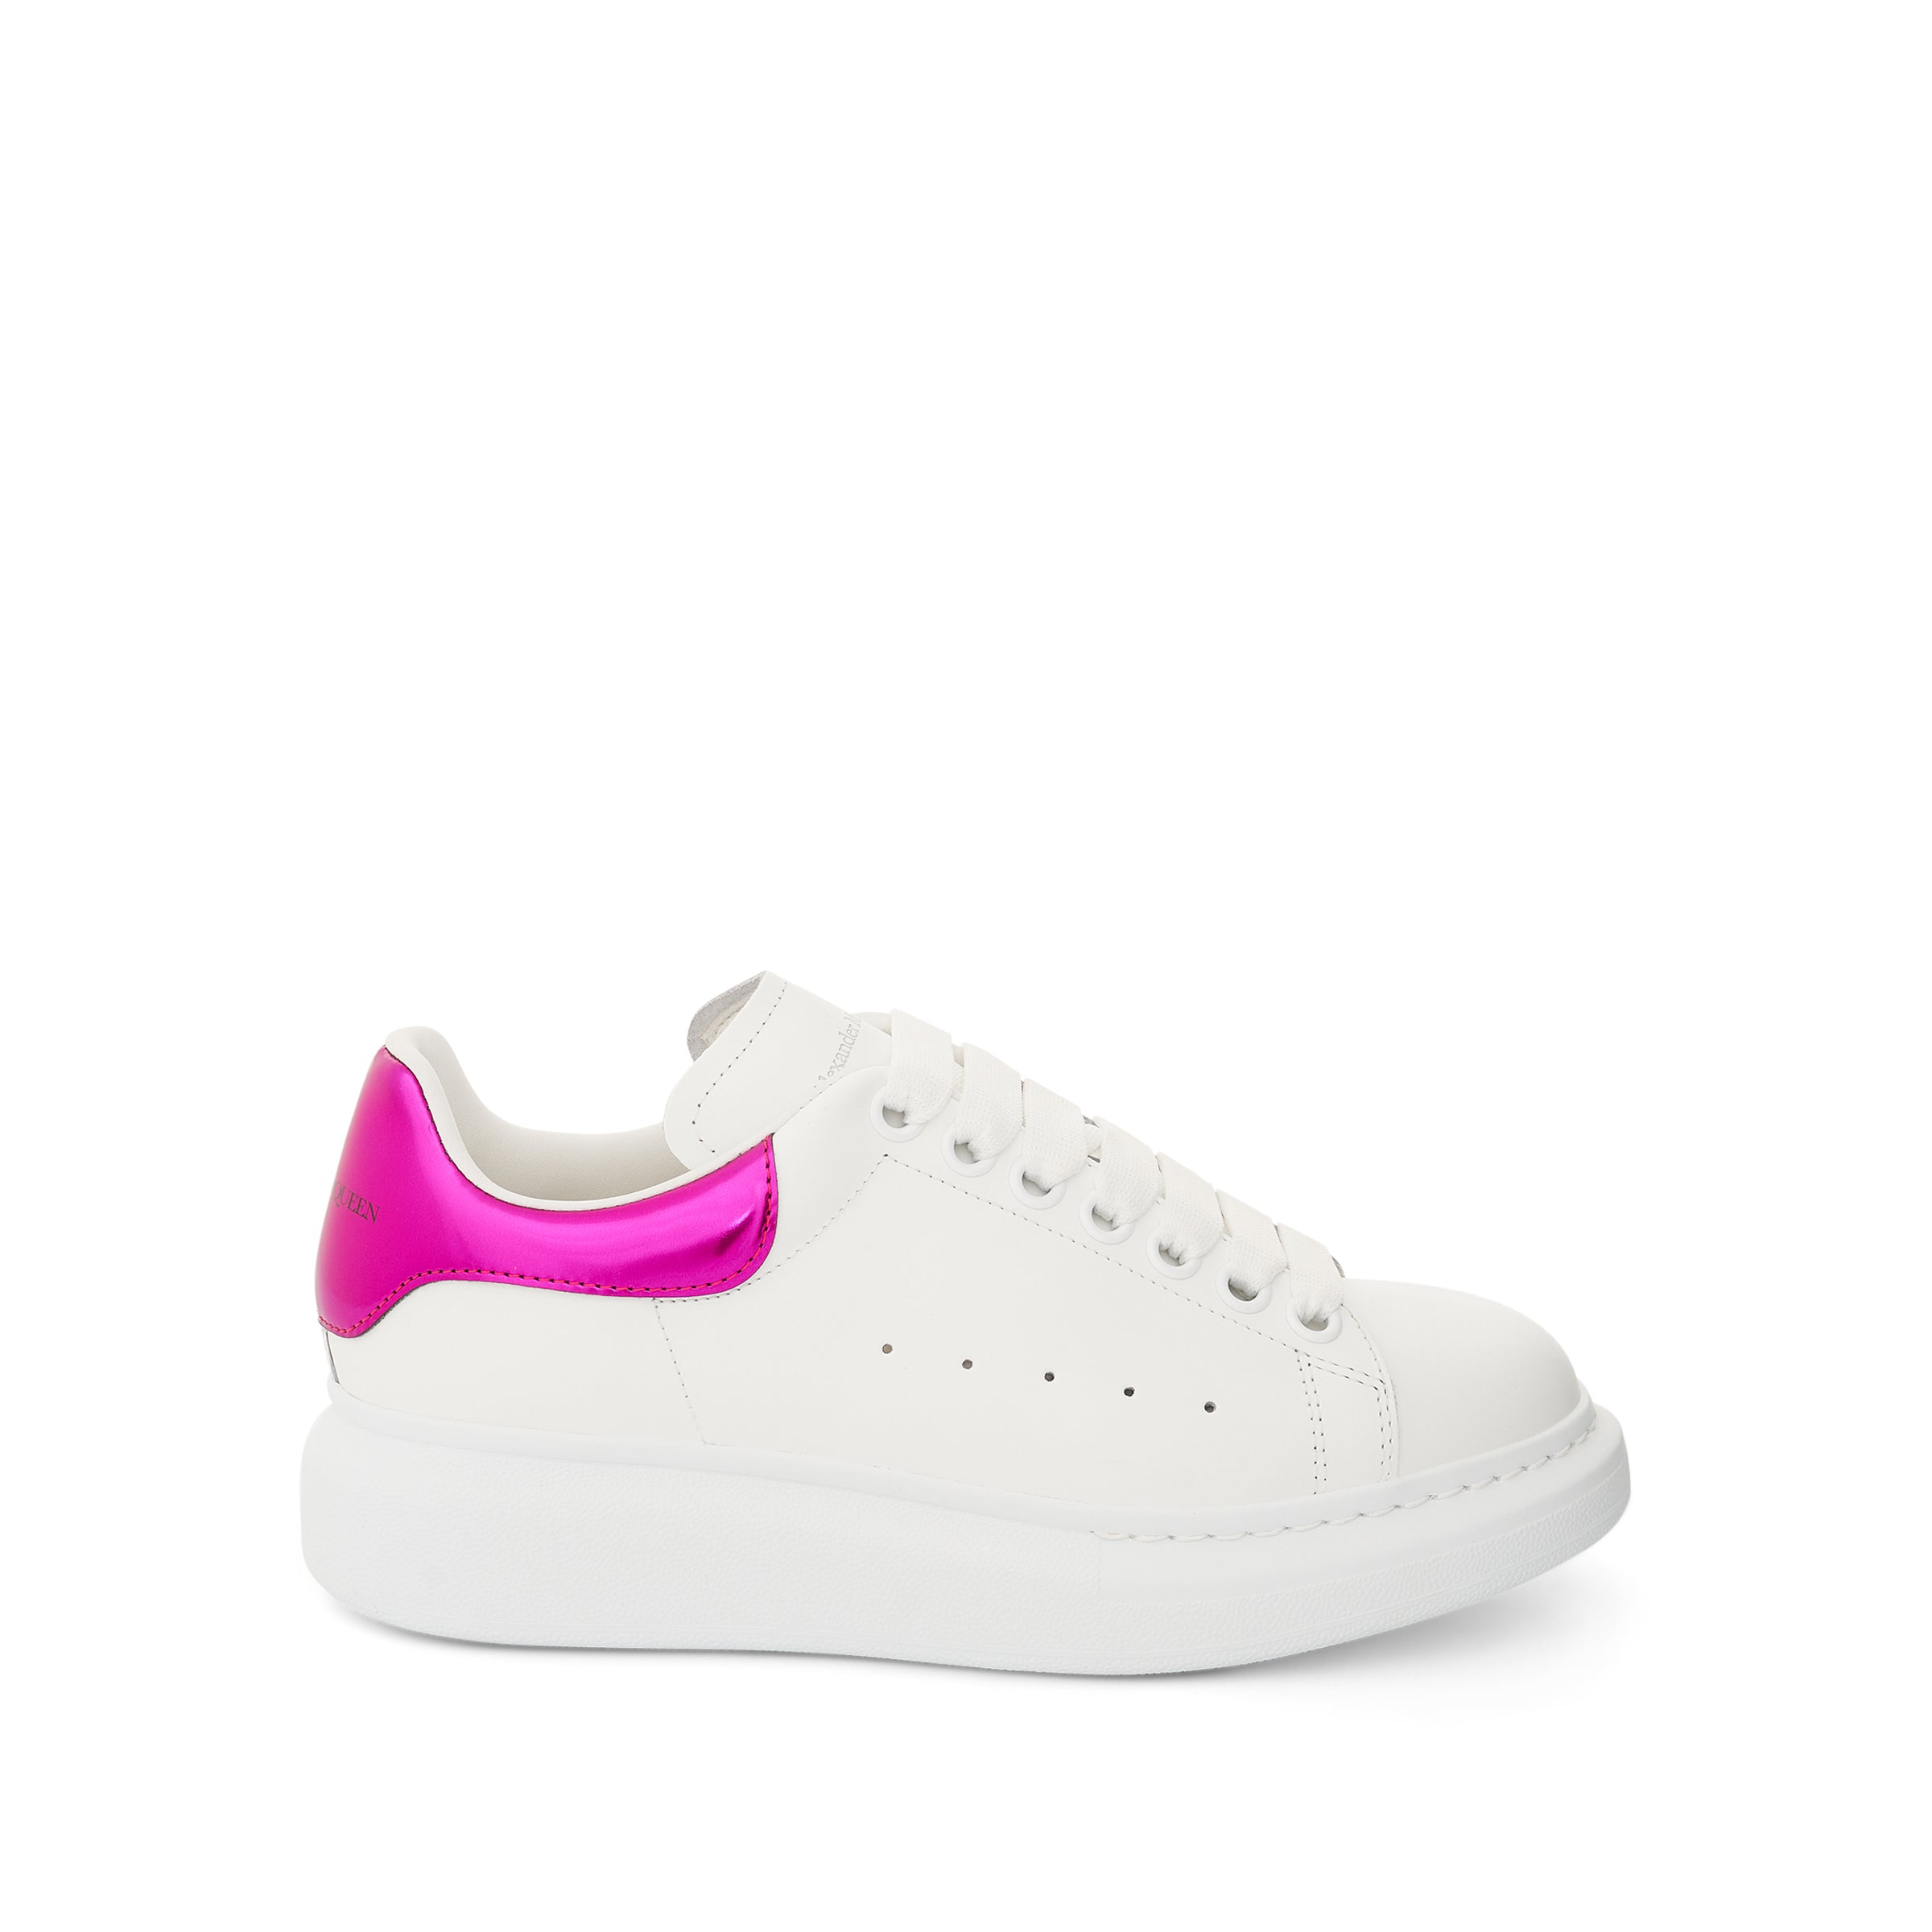 ALEXANDER McQUEEN Larry Oversized Heel Sneaker in White/Printers Pink ...